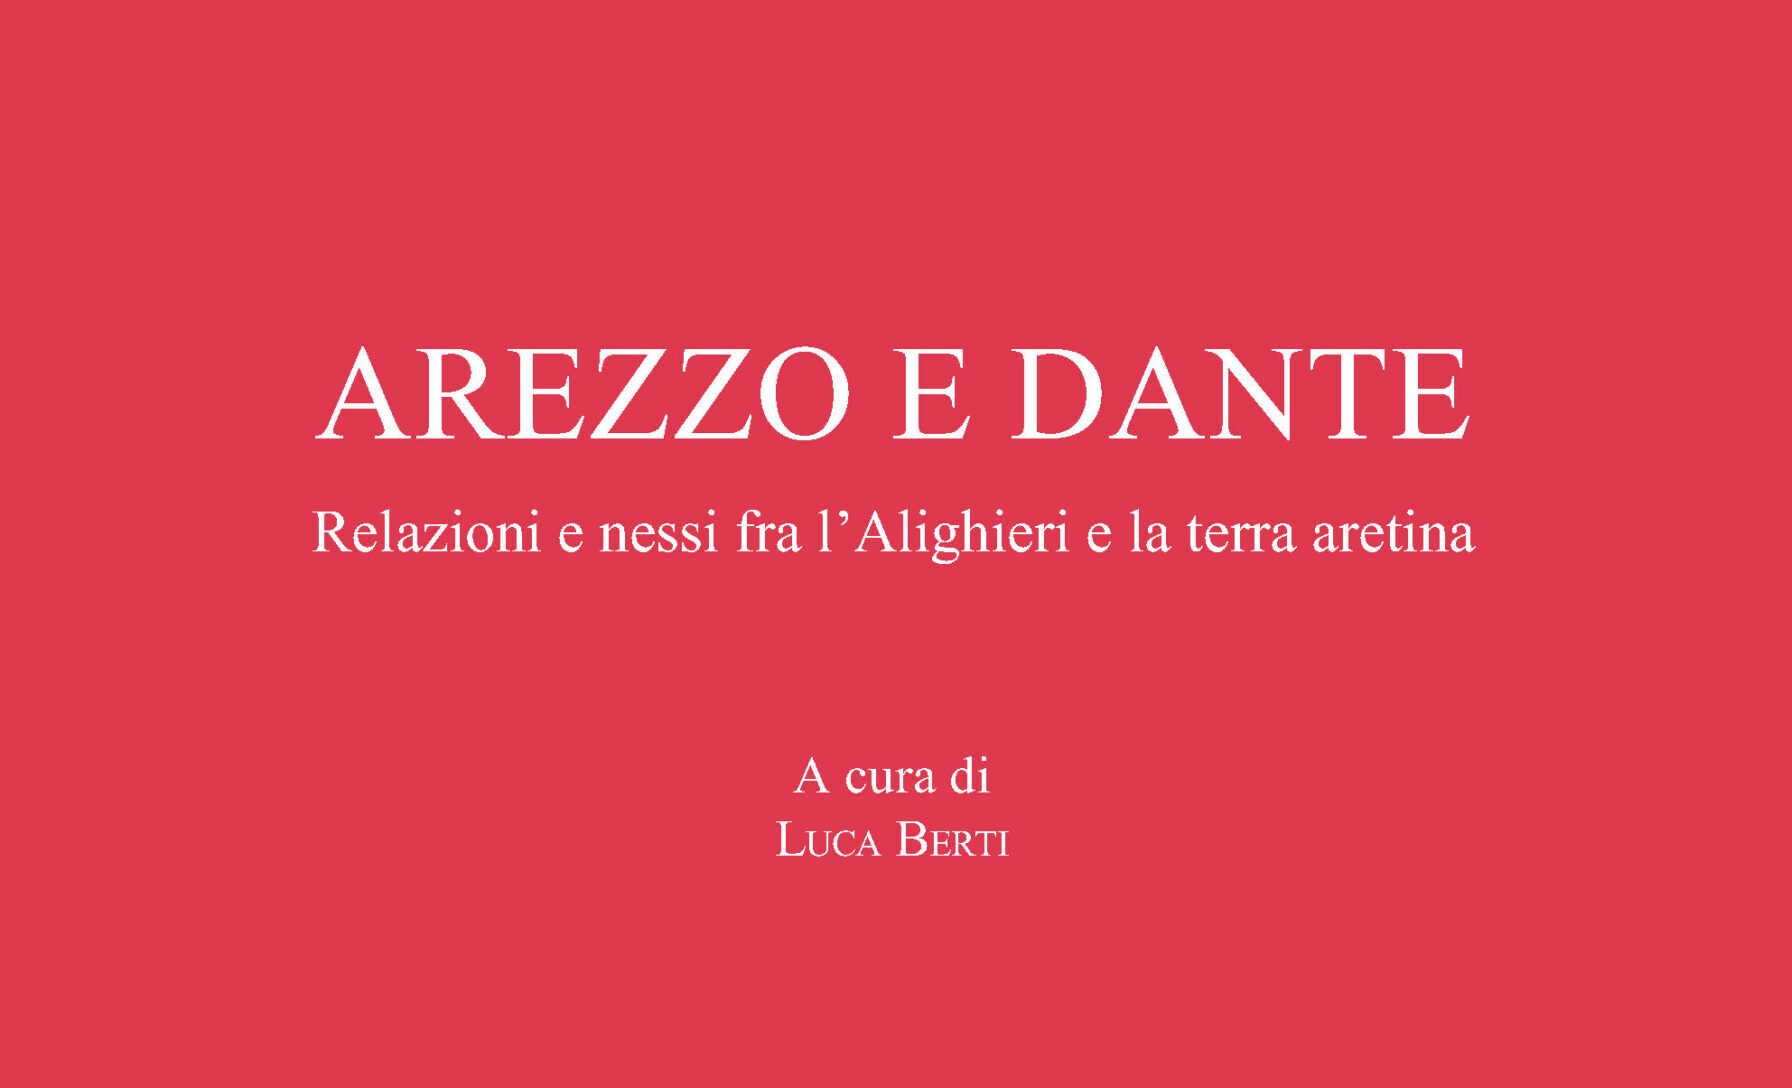 Società Storica Aretina: arriva in libreria il volume “Arezzo e Dante”